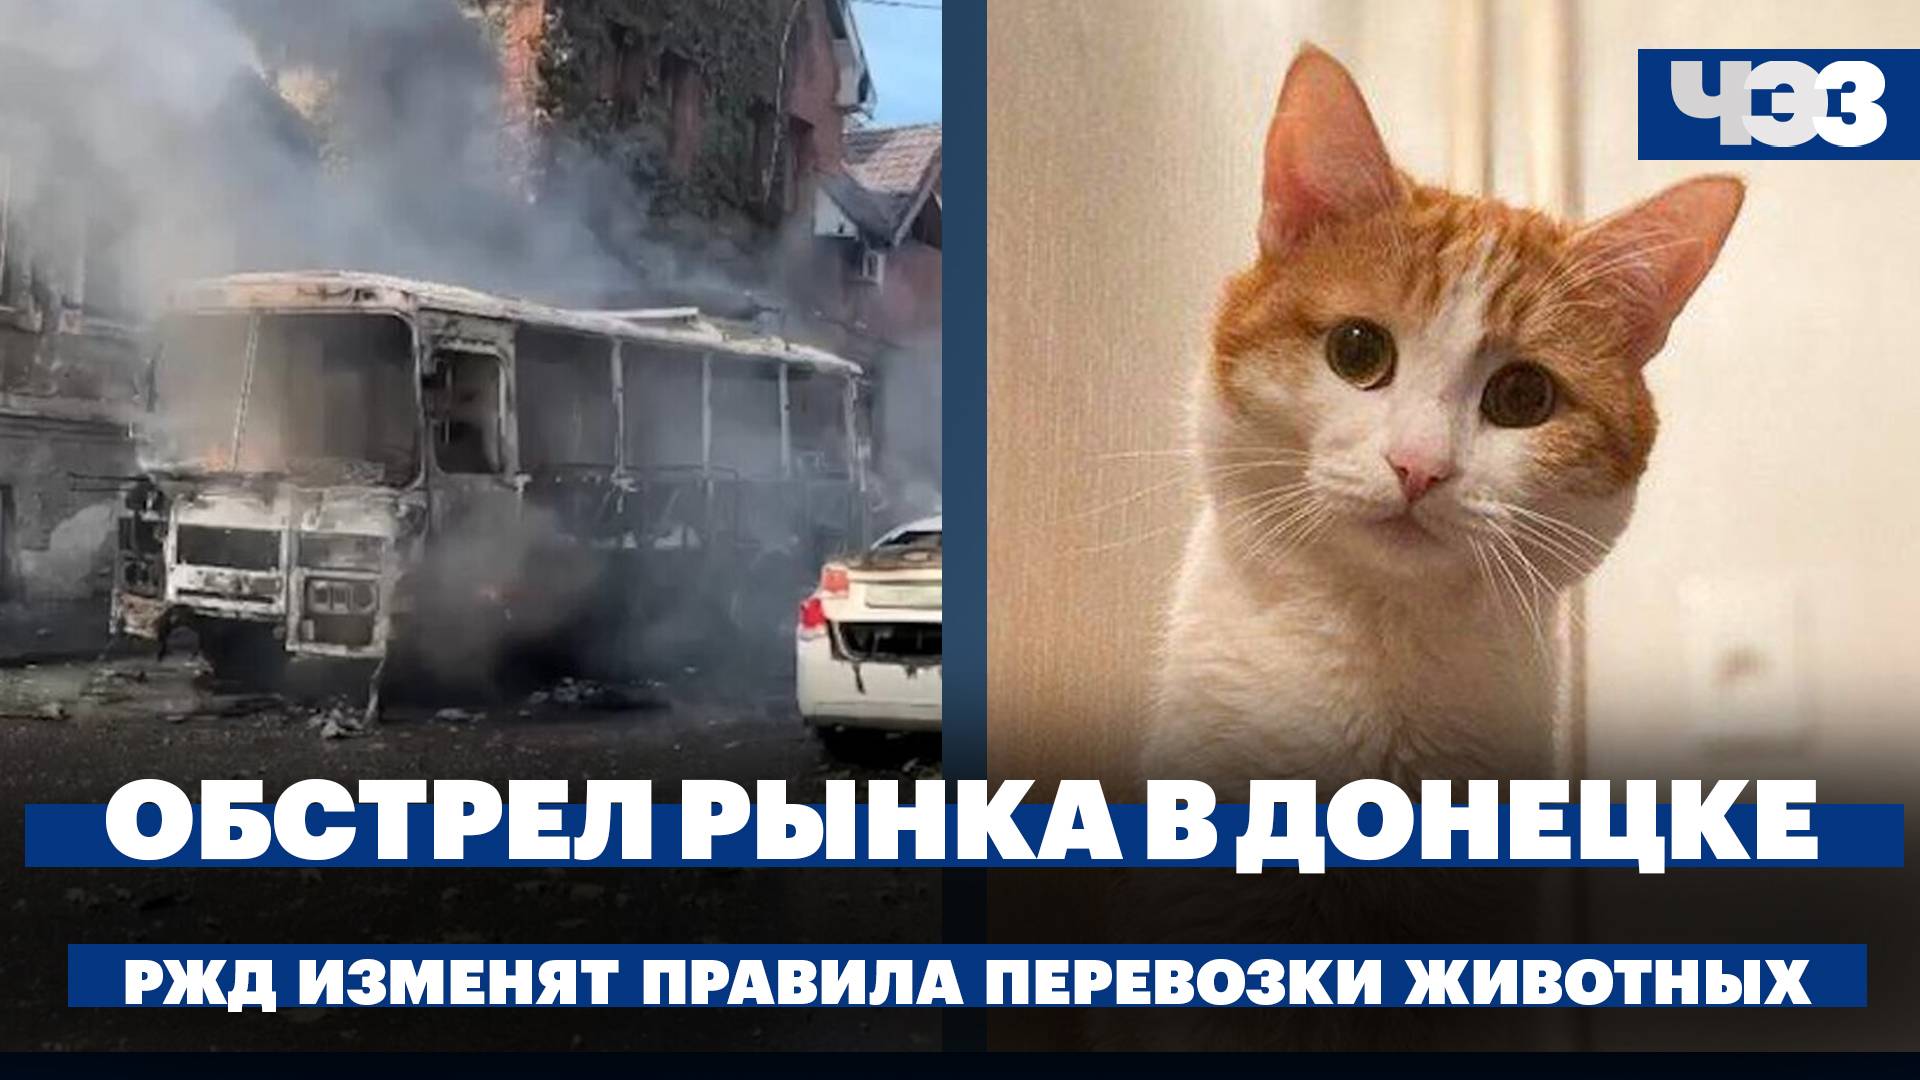 Обстрел рынка в Донецке. РЖД изменят правила перевозки животных после гибели кота Твикса